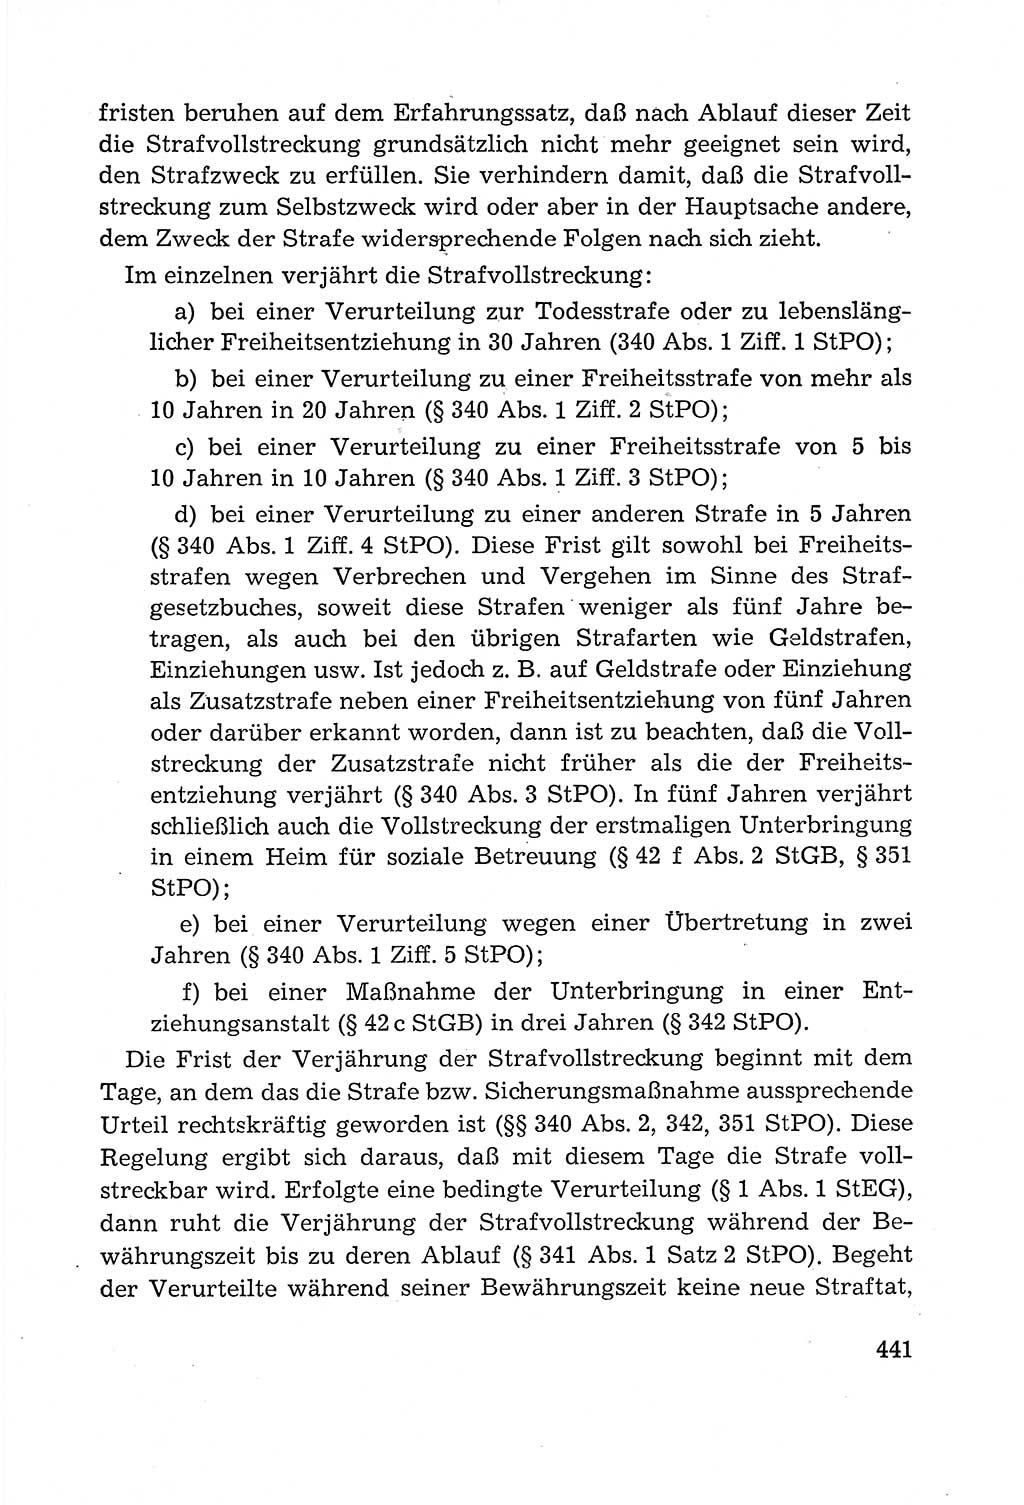 Leitfaden des Strafprozeßrechts der Deutschen Demokratischen Republik (DDR) 1959, Seite 441 (LF StPR DDR 1959, S. 441)